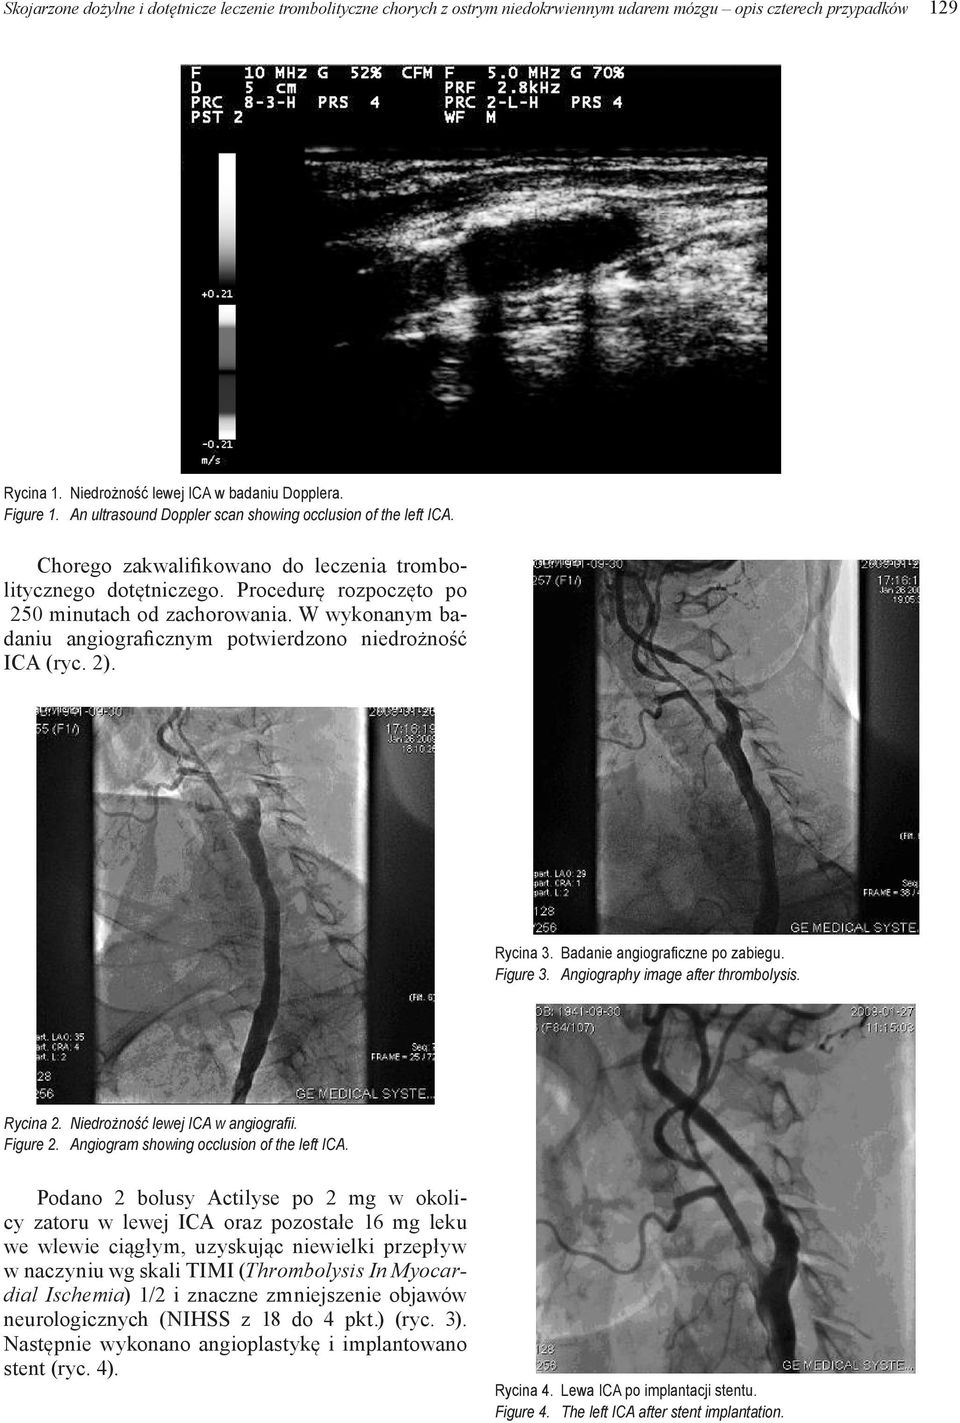 W wykonanym badaniu angiograficznym potwierdzono niedrożność ICA (ryc. 2). Rycina 3. Badanie angiograficzne po zabiegu. Figure 3. Angiography image after thrombolysis. Rycina 2.